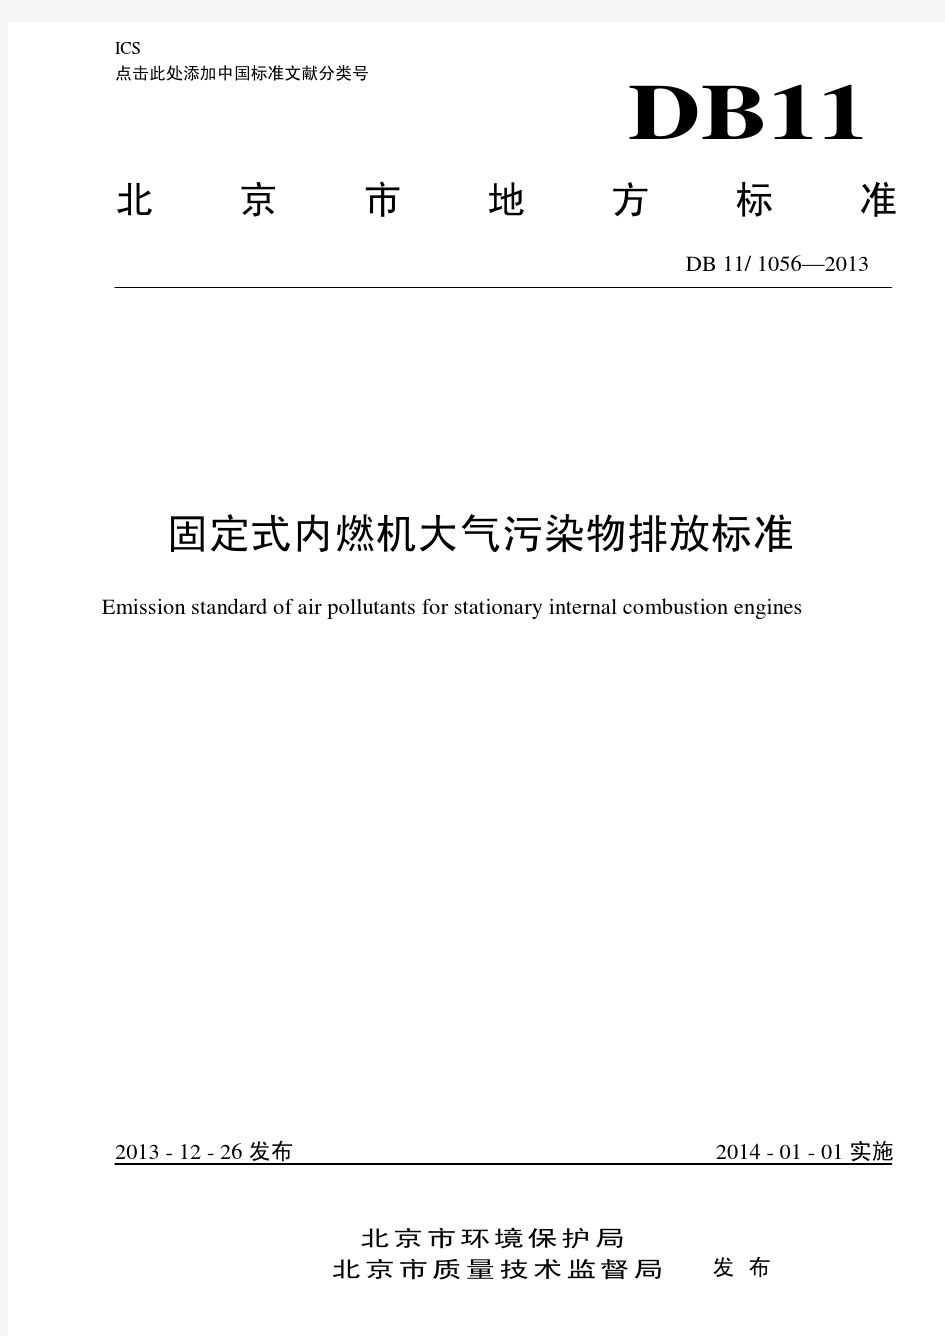 《固定式内燃机大气污染物排放标准》DB11-1056-2013